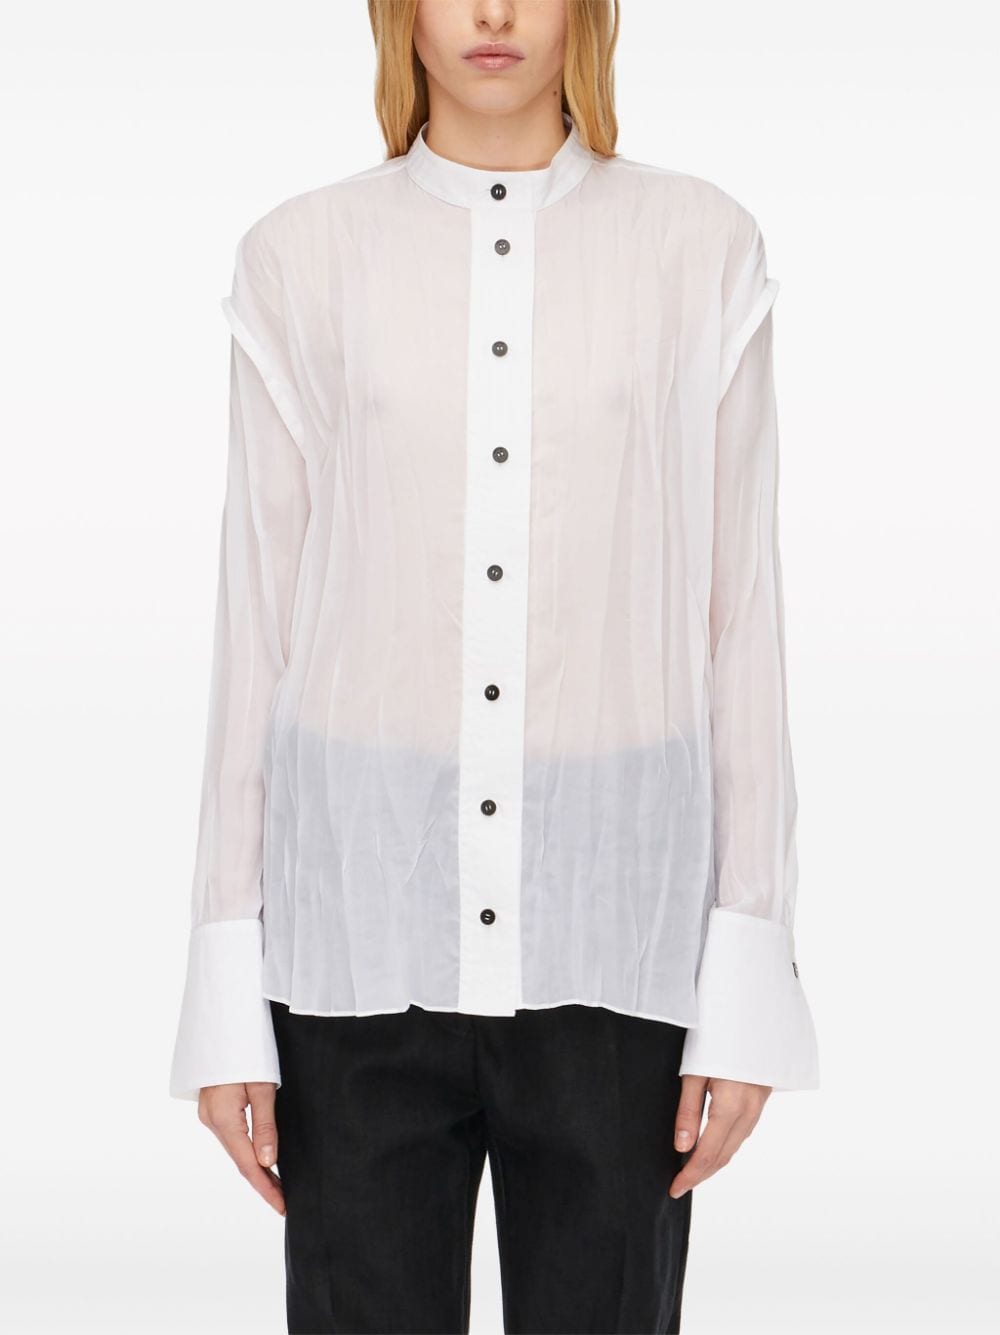 Crinkled sheer organza shirt<BR/><BR/><BR/>